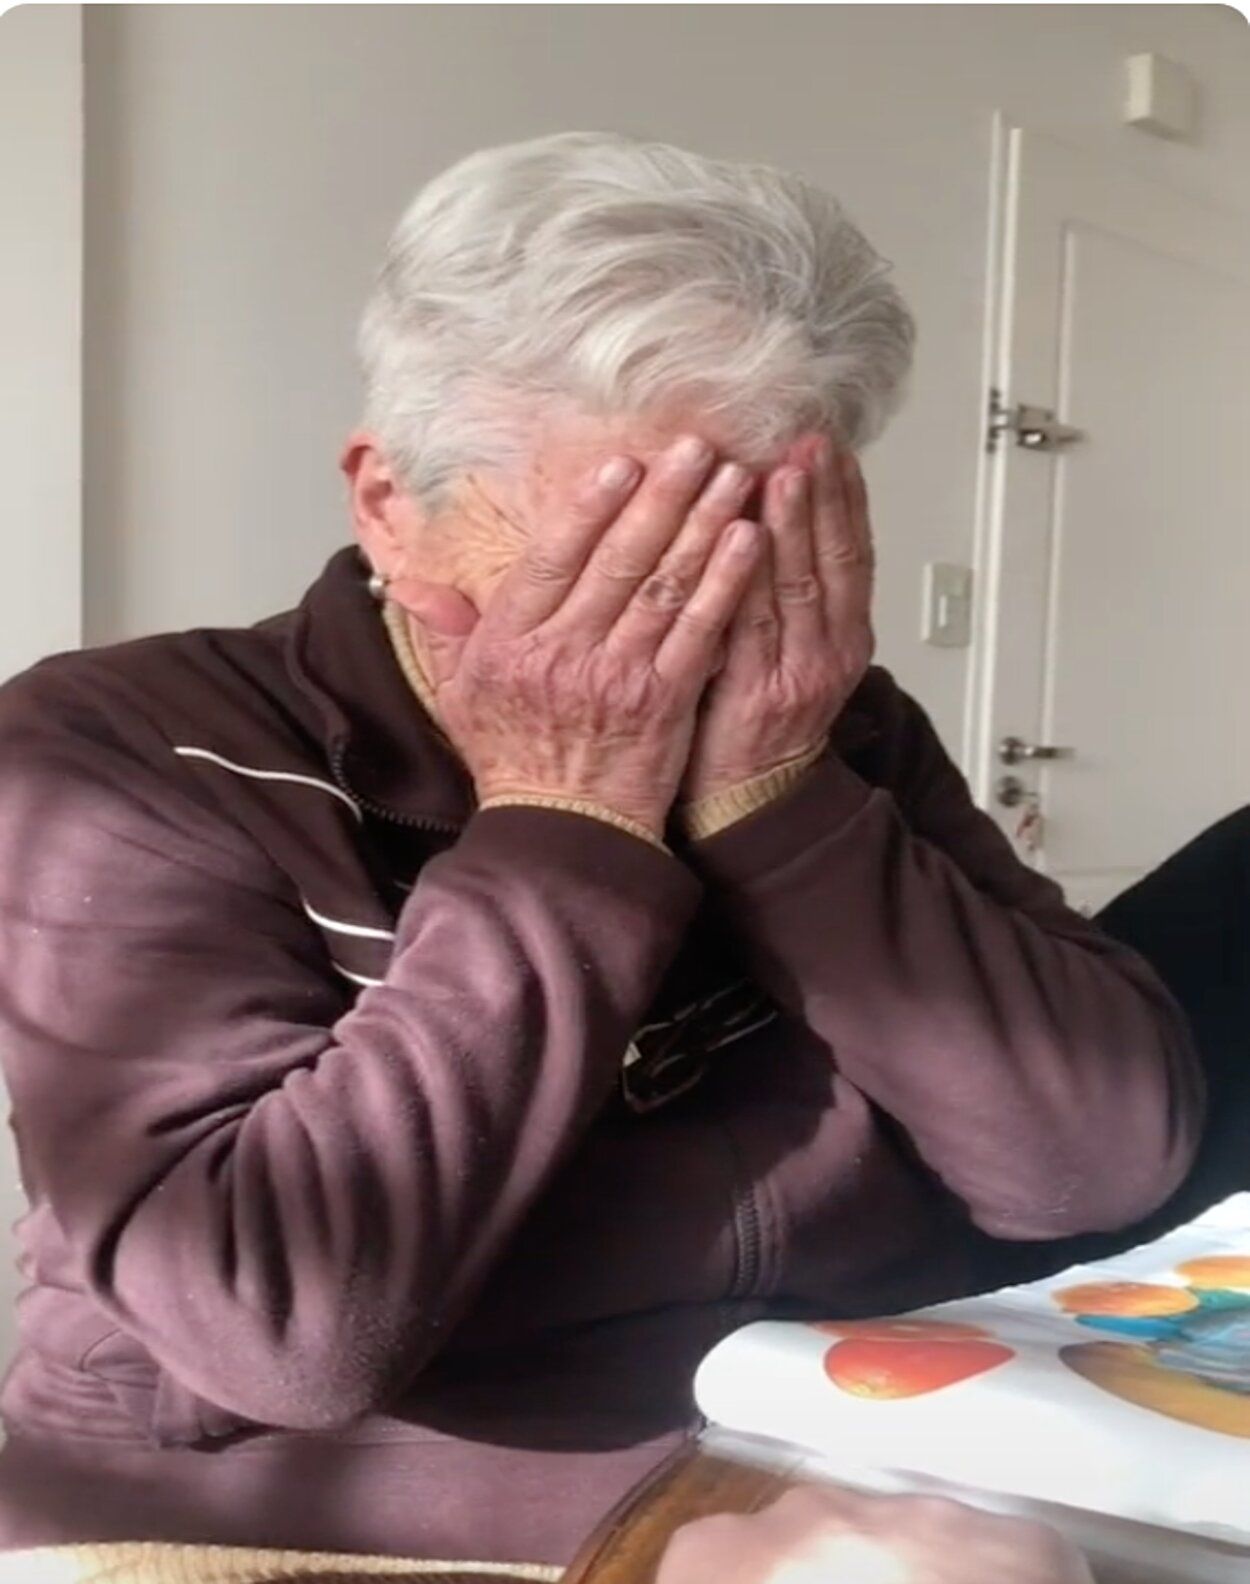 VÍDEO: Se tatúa la fecha de nacimiento de su abuela para darle una sorpresa